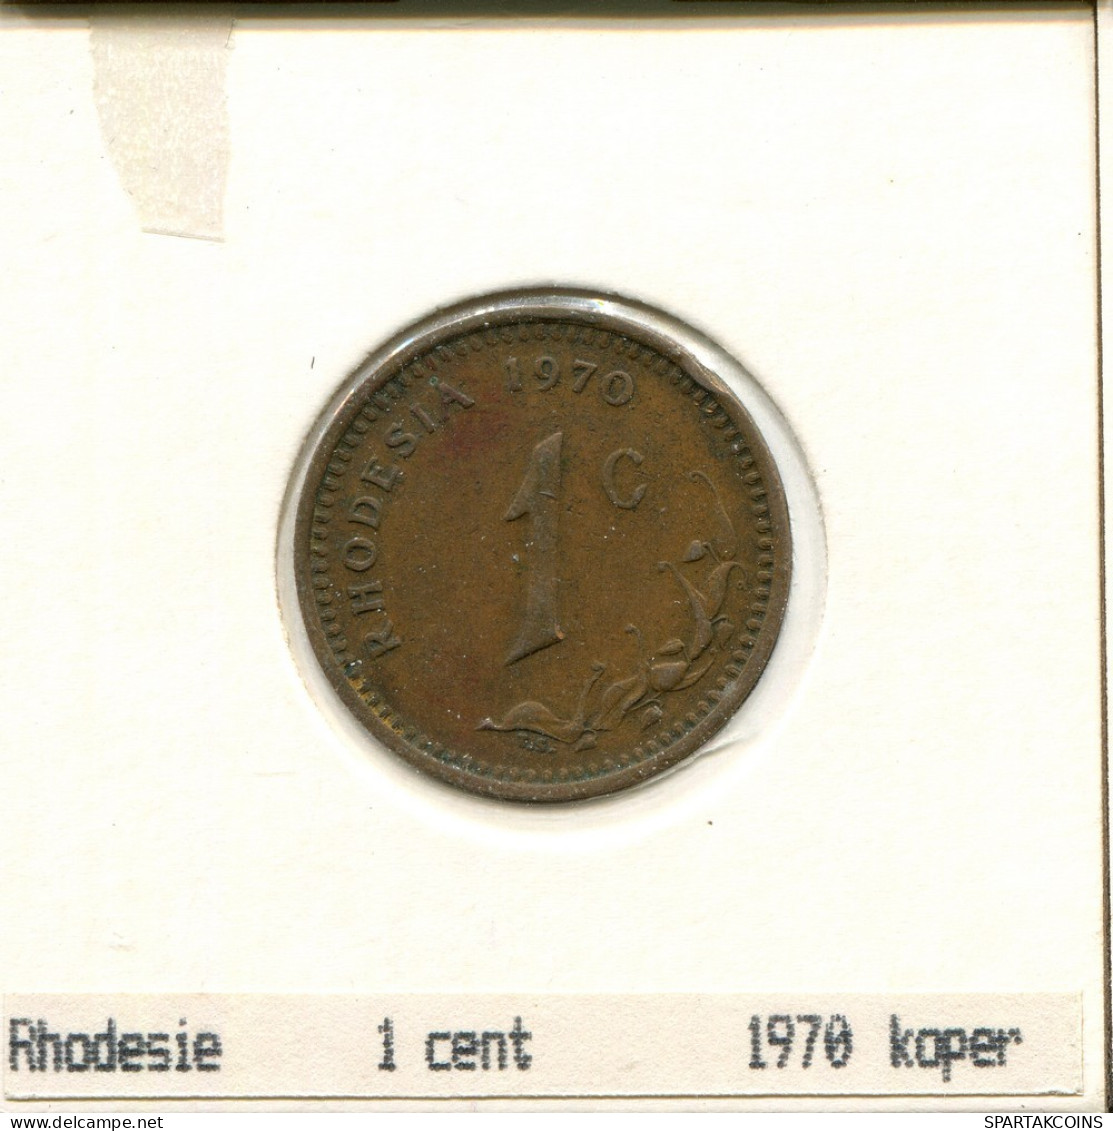 1 CENT 1970 RODESIA RHODESIA Moneda #AS038.E.A - Rhodesien